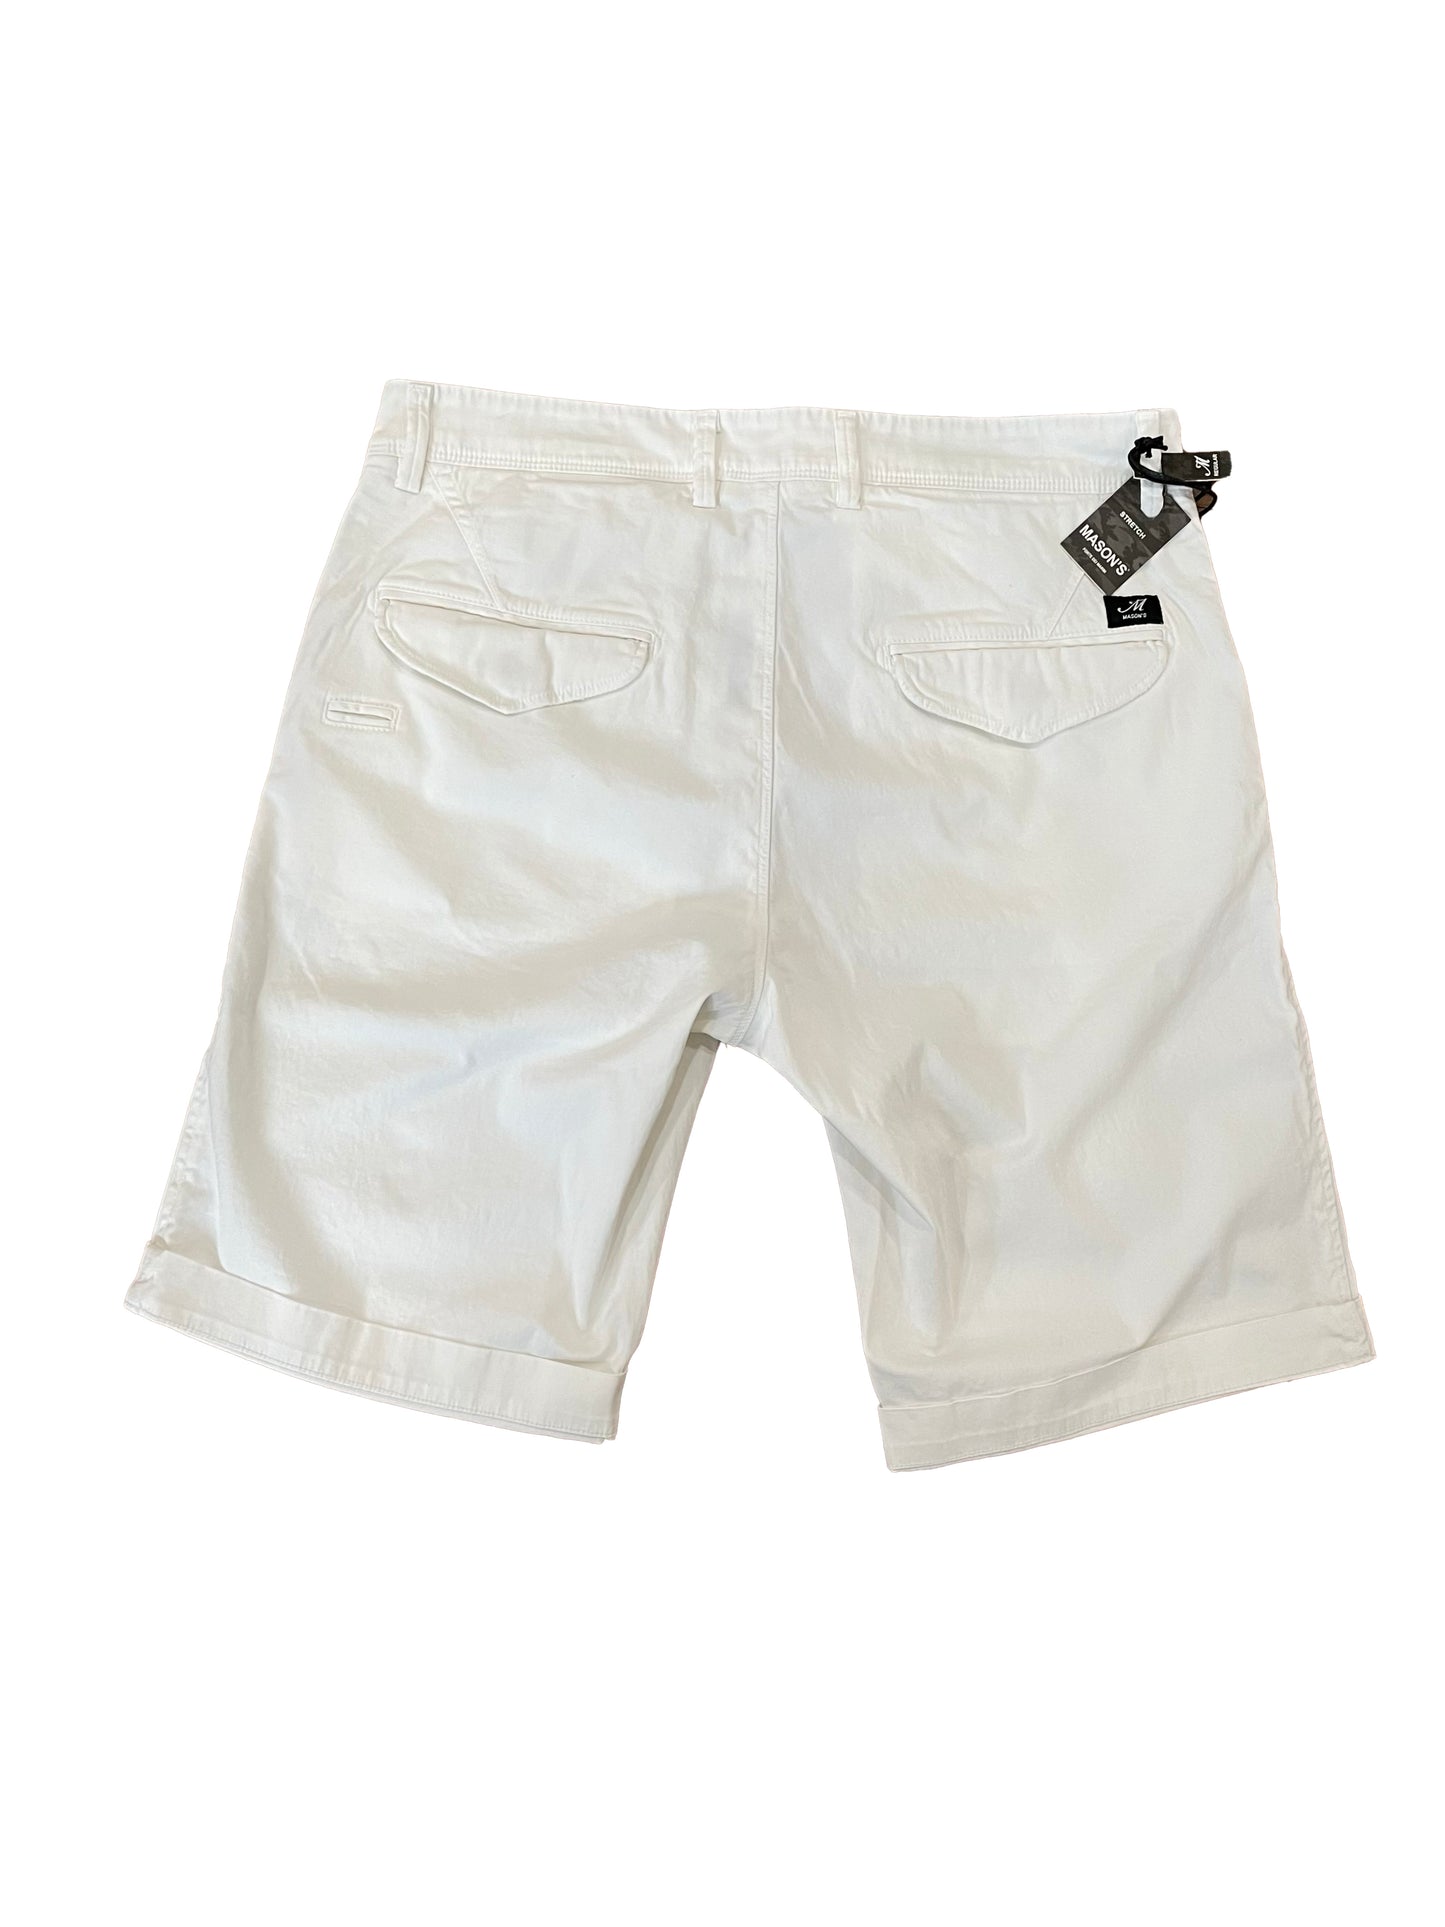 Masons Eisenhower 1 White Shorts